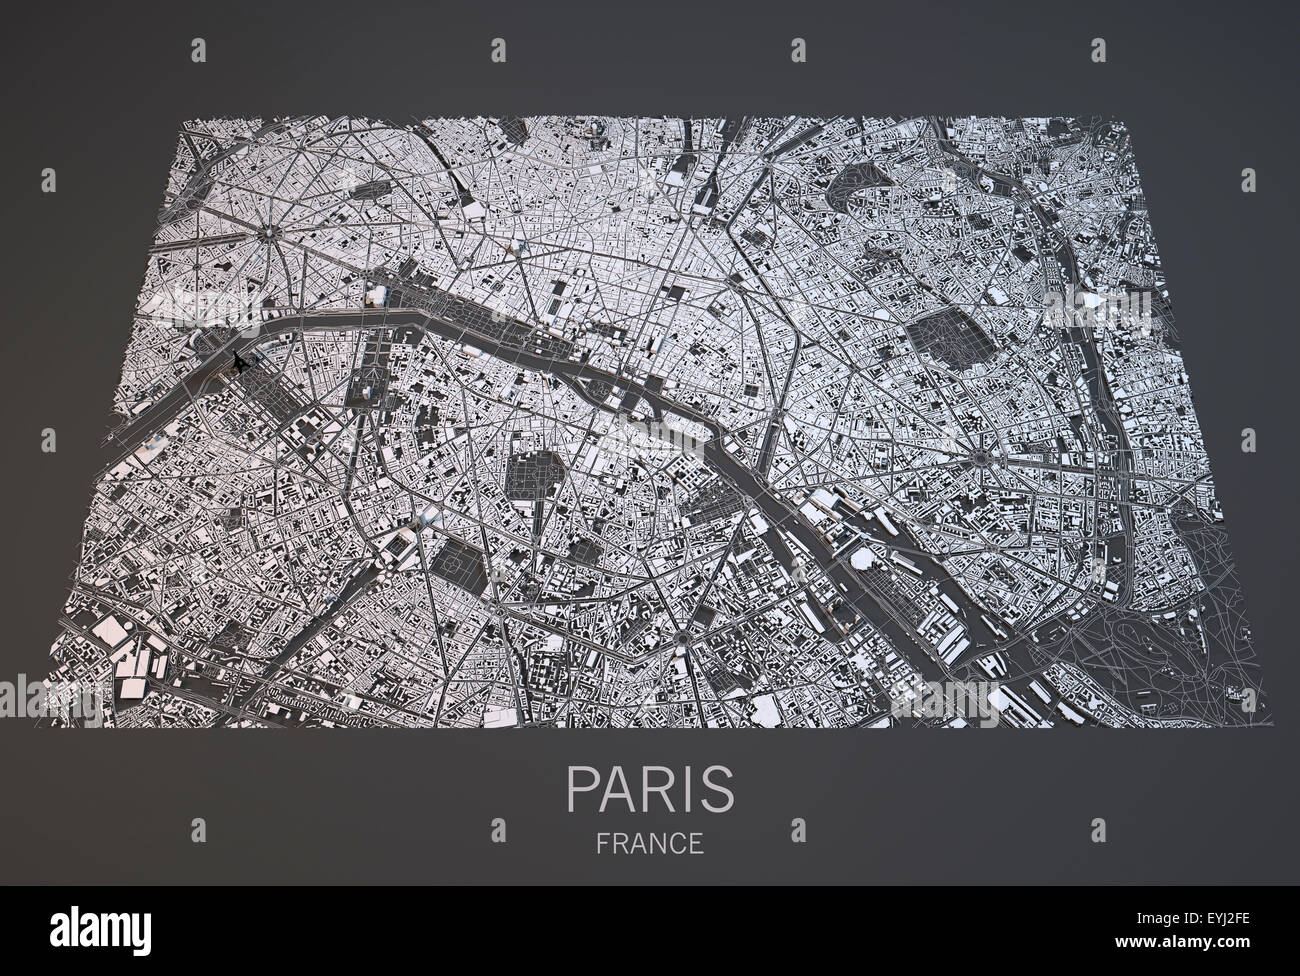 Vista satélite del mapa de París, Francia Fotografía de stock - Alamy